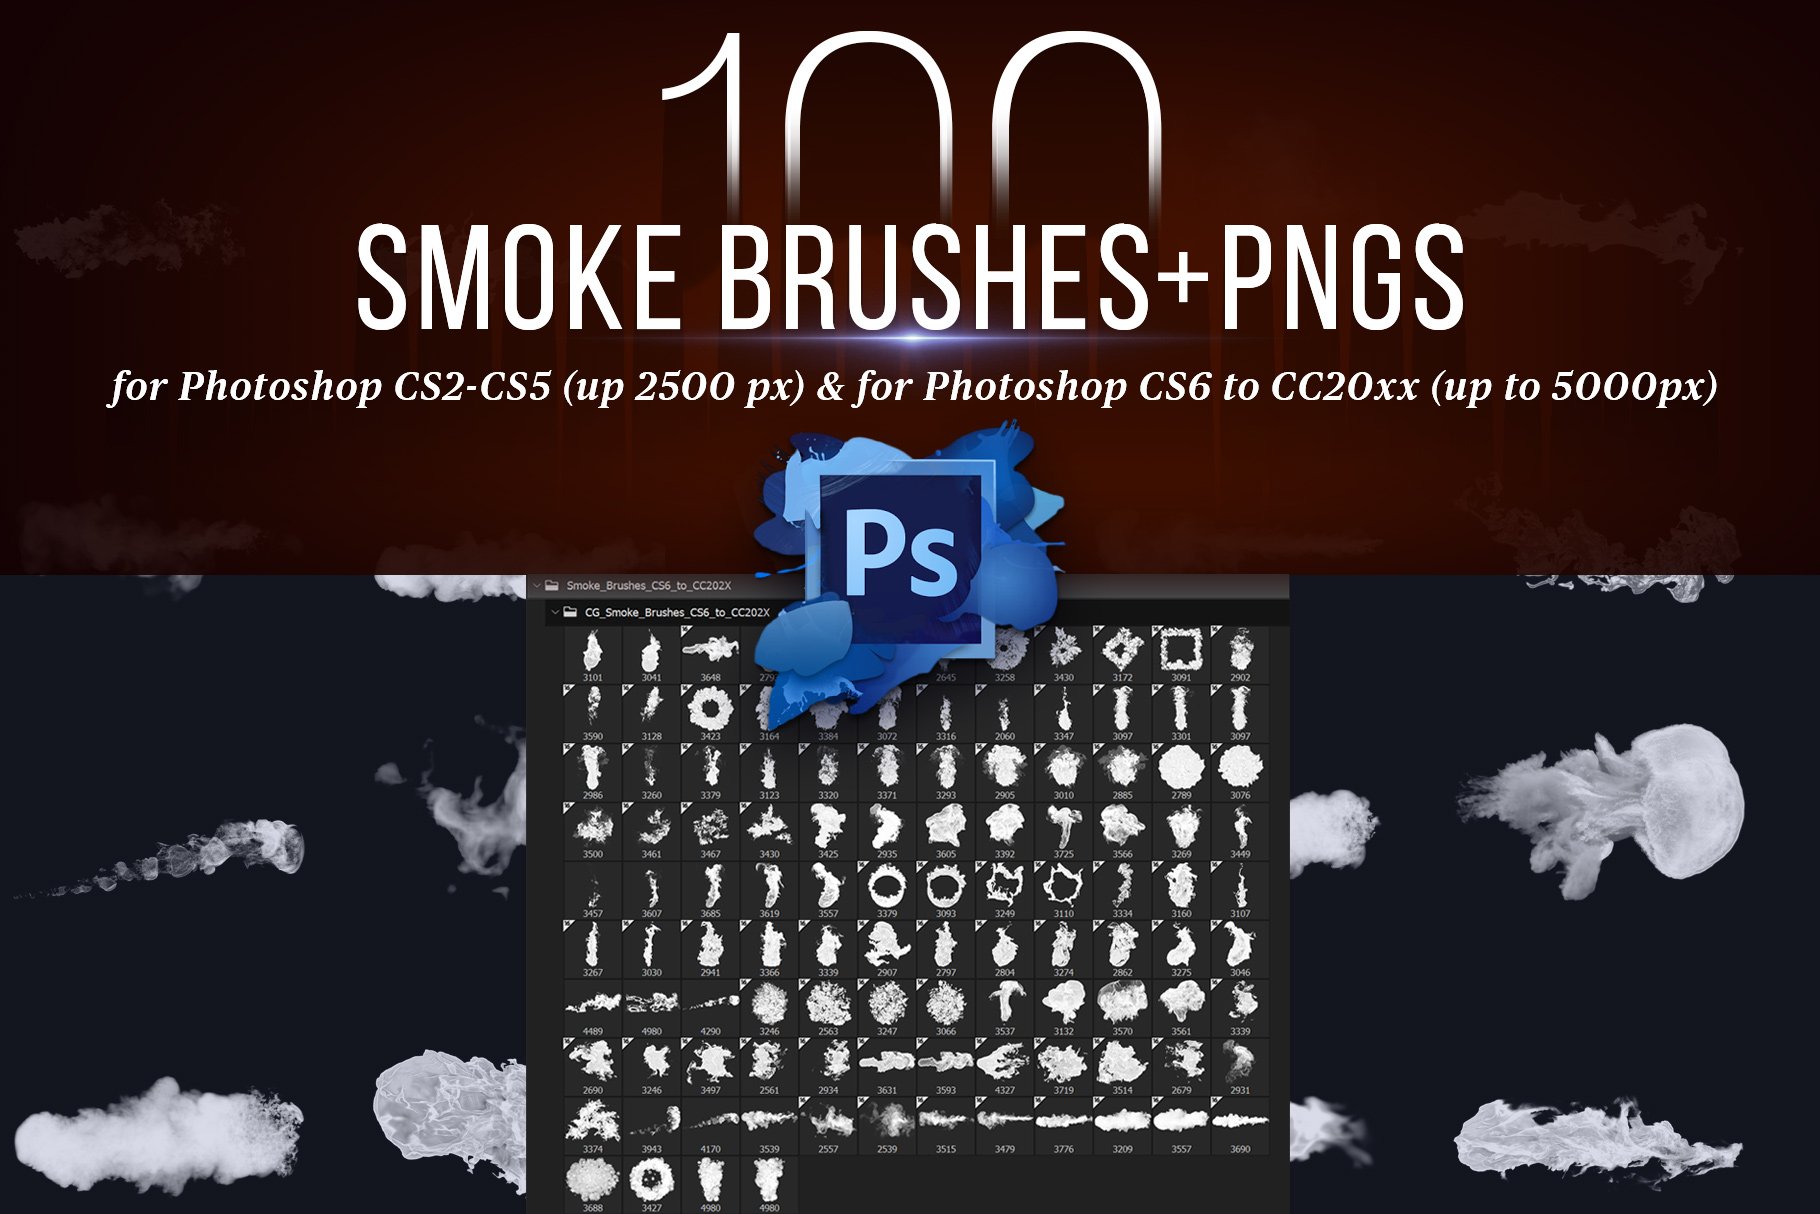 100 Photoshop Smoke Brushes + PNGscover image.